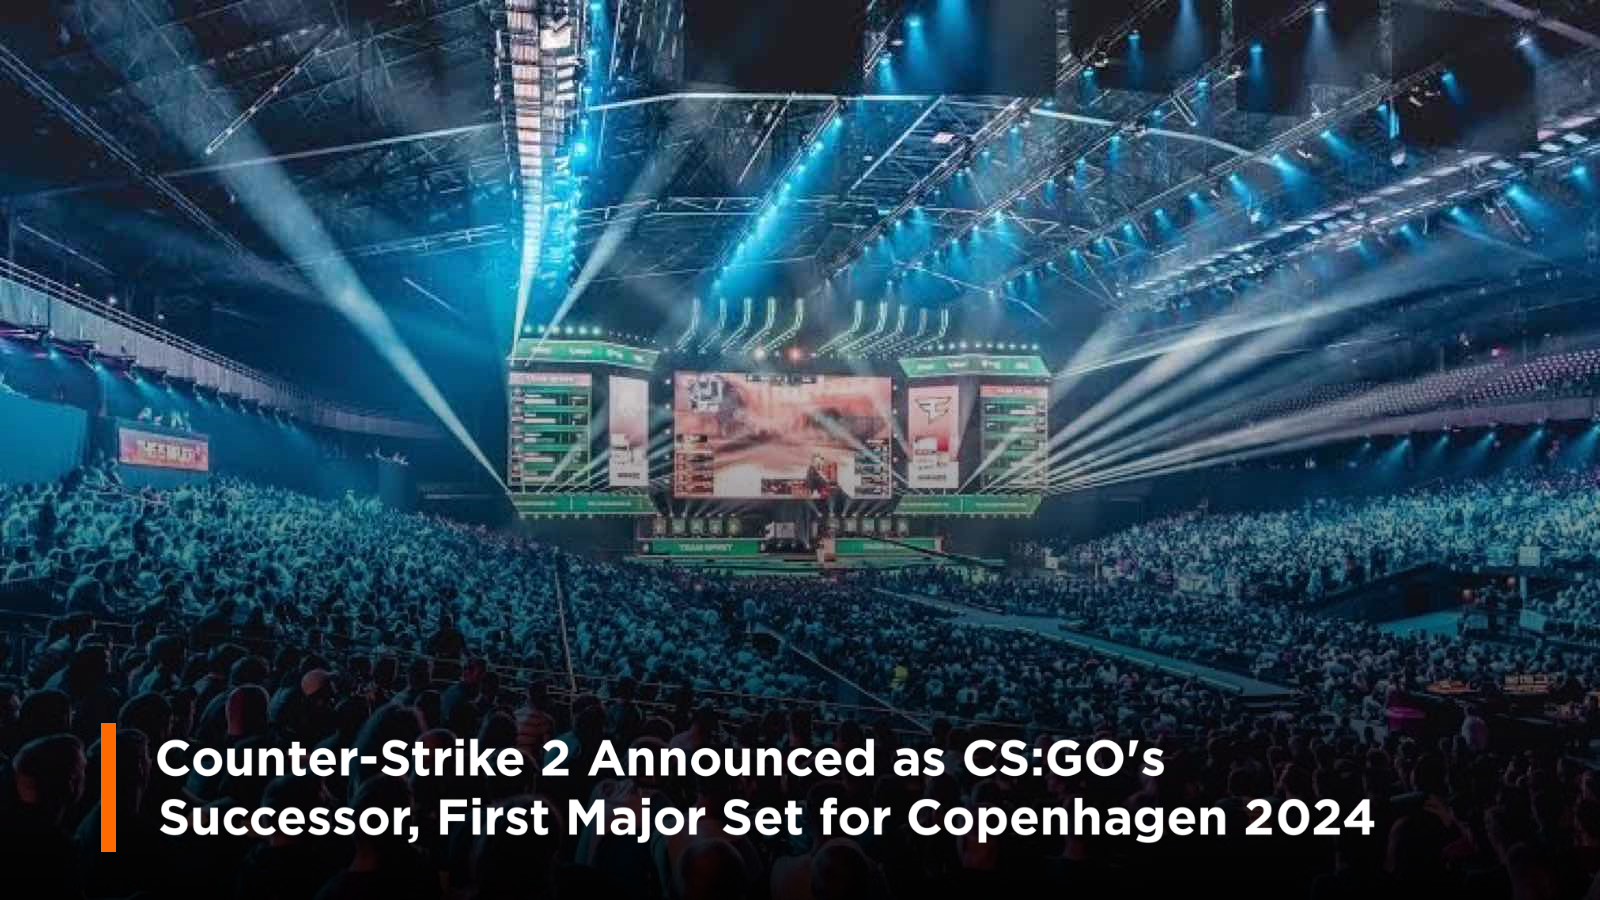 Counter-Strike 2 Announced as CS:GO’s Successor, First Major Set for Copenhagen 2024